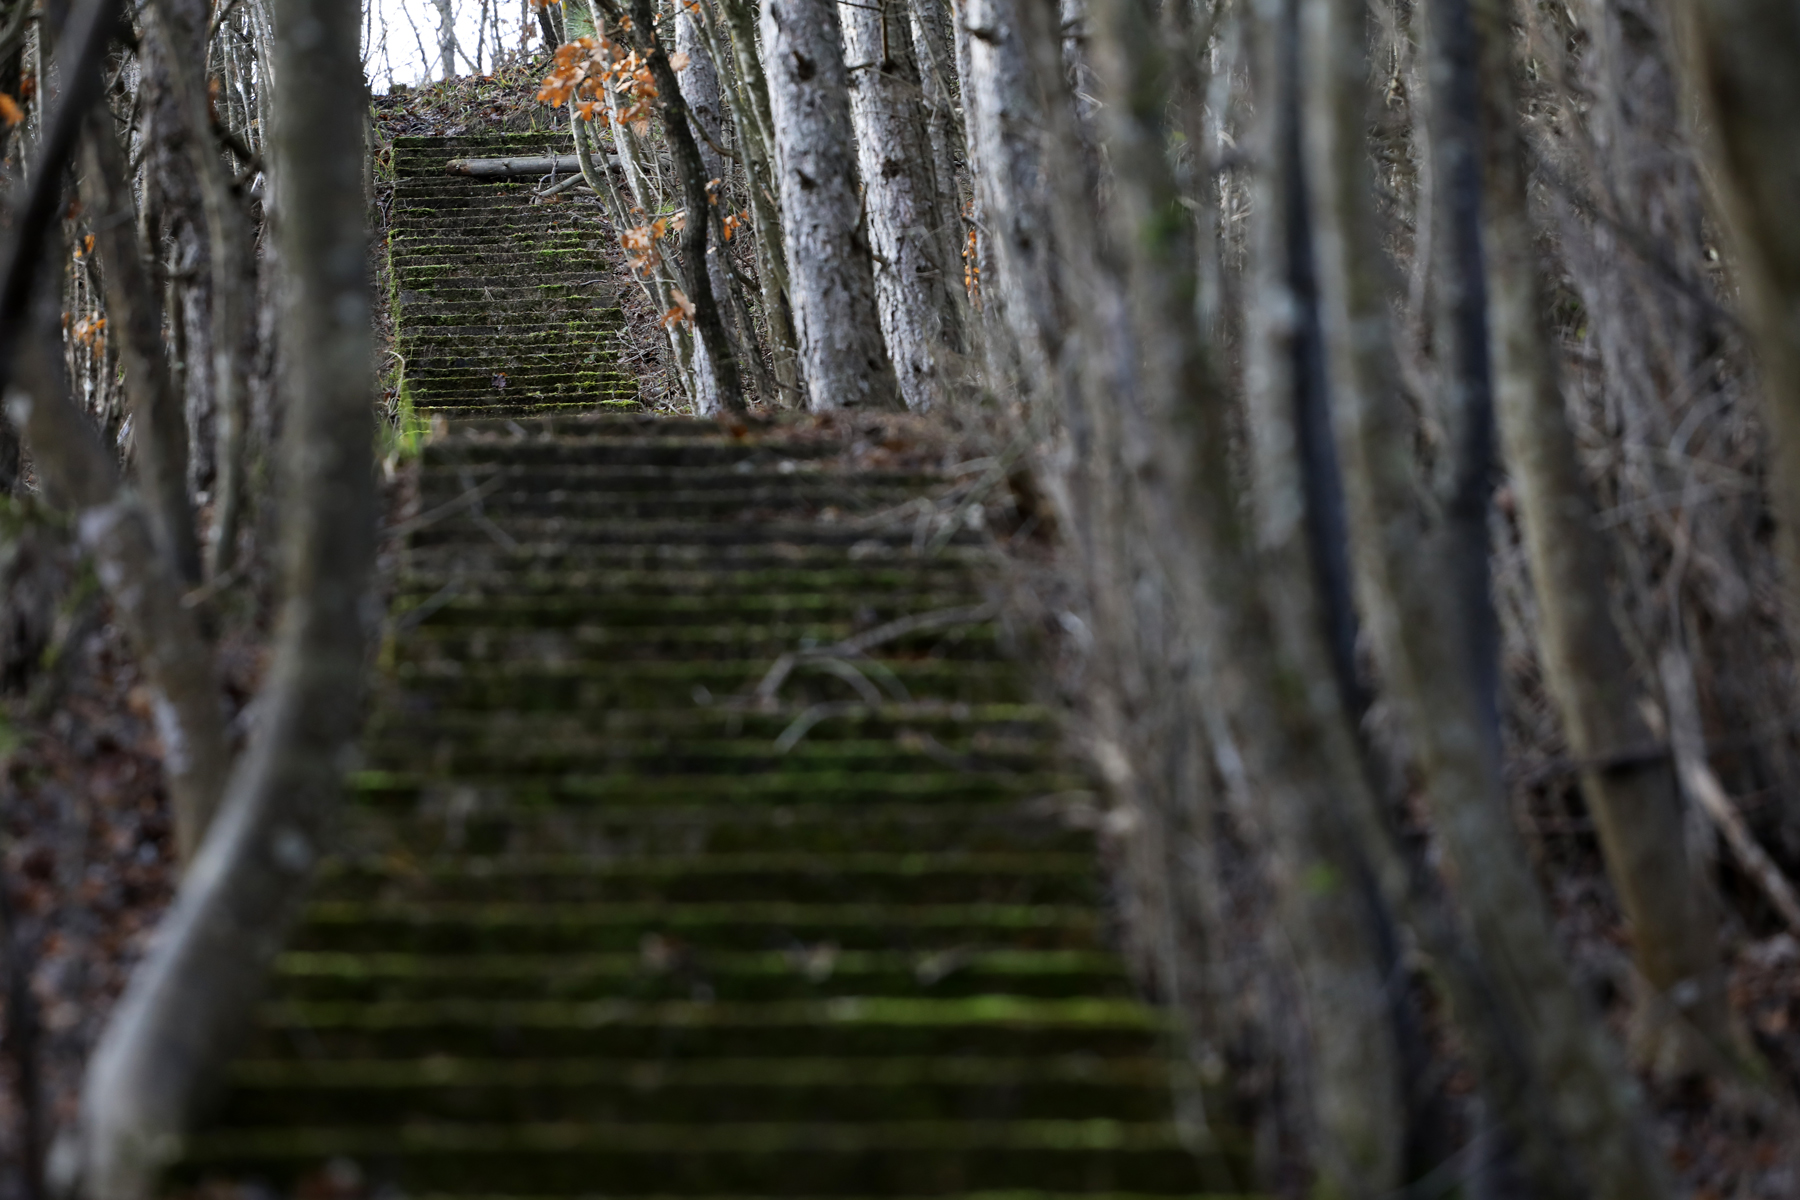 Kiderítettük! 50 éves titkokat rejt a sehova nem vezető lépcsősor a balatoni erdőben